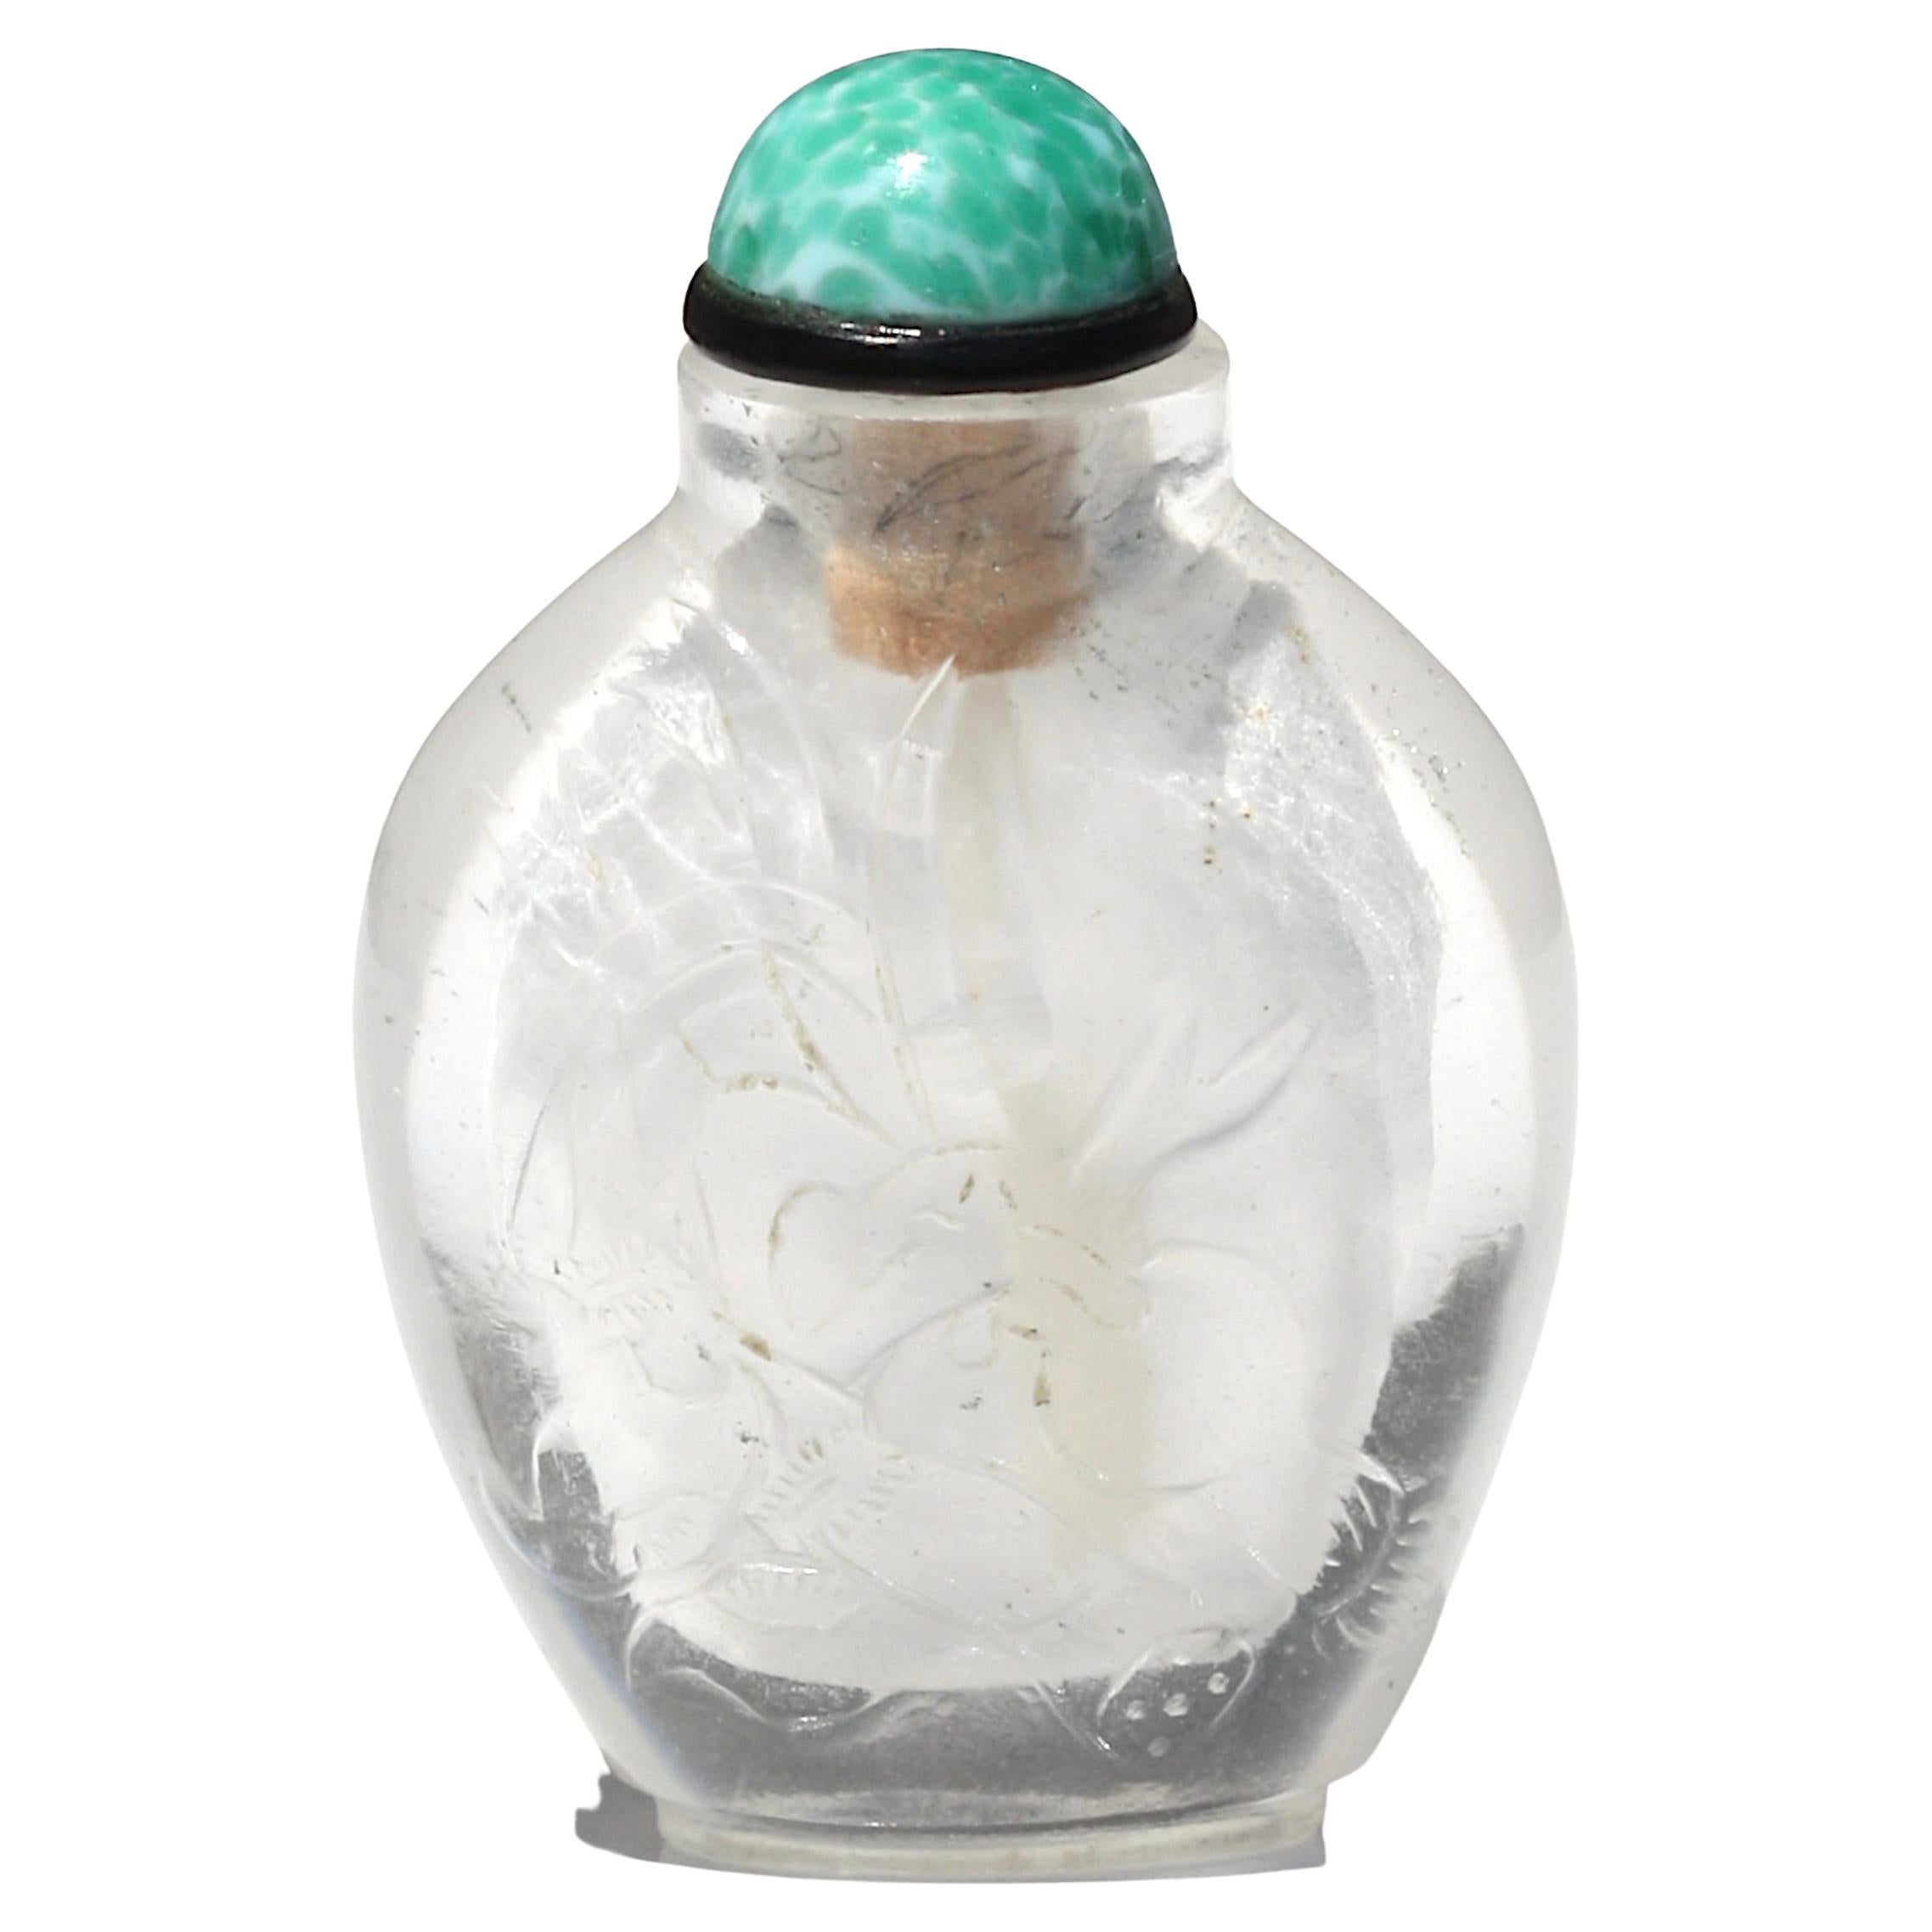 Chinesischer Bergkristall "Damen" Schnupftabakflasche Qing Dynasty, 19.